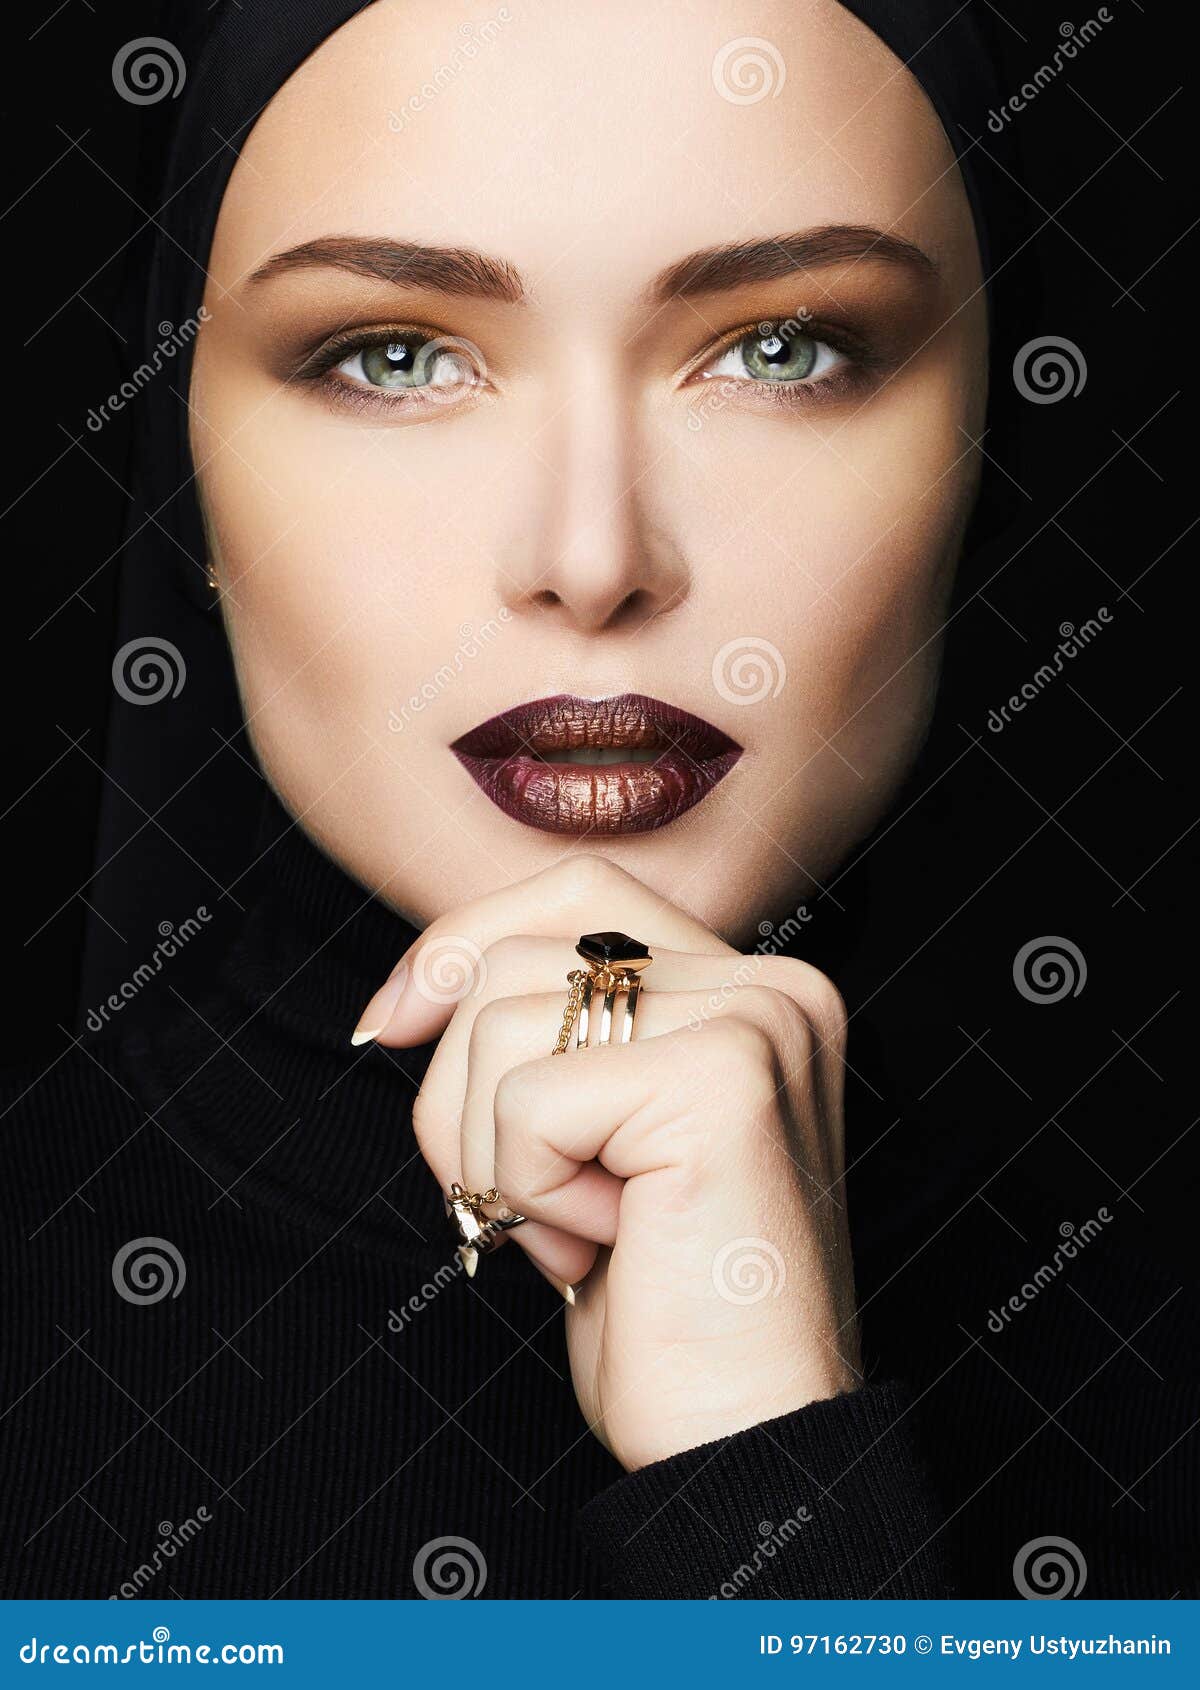 Maquillage Femme Islamique De Style De Mode Photo stock - Image du